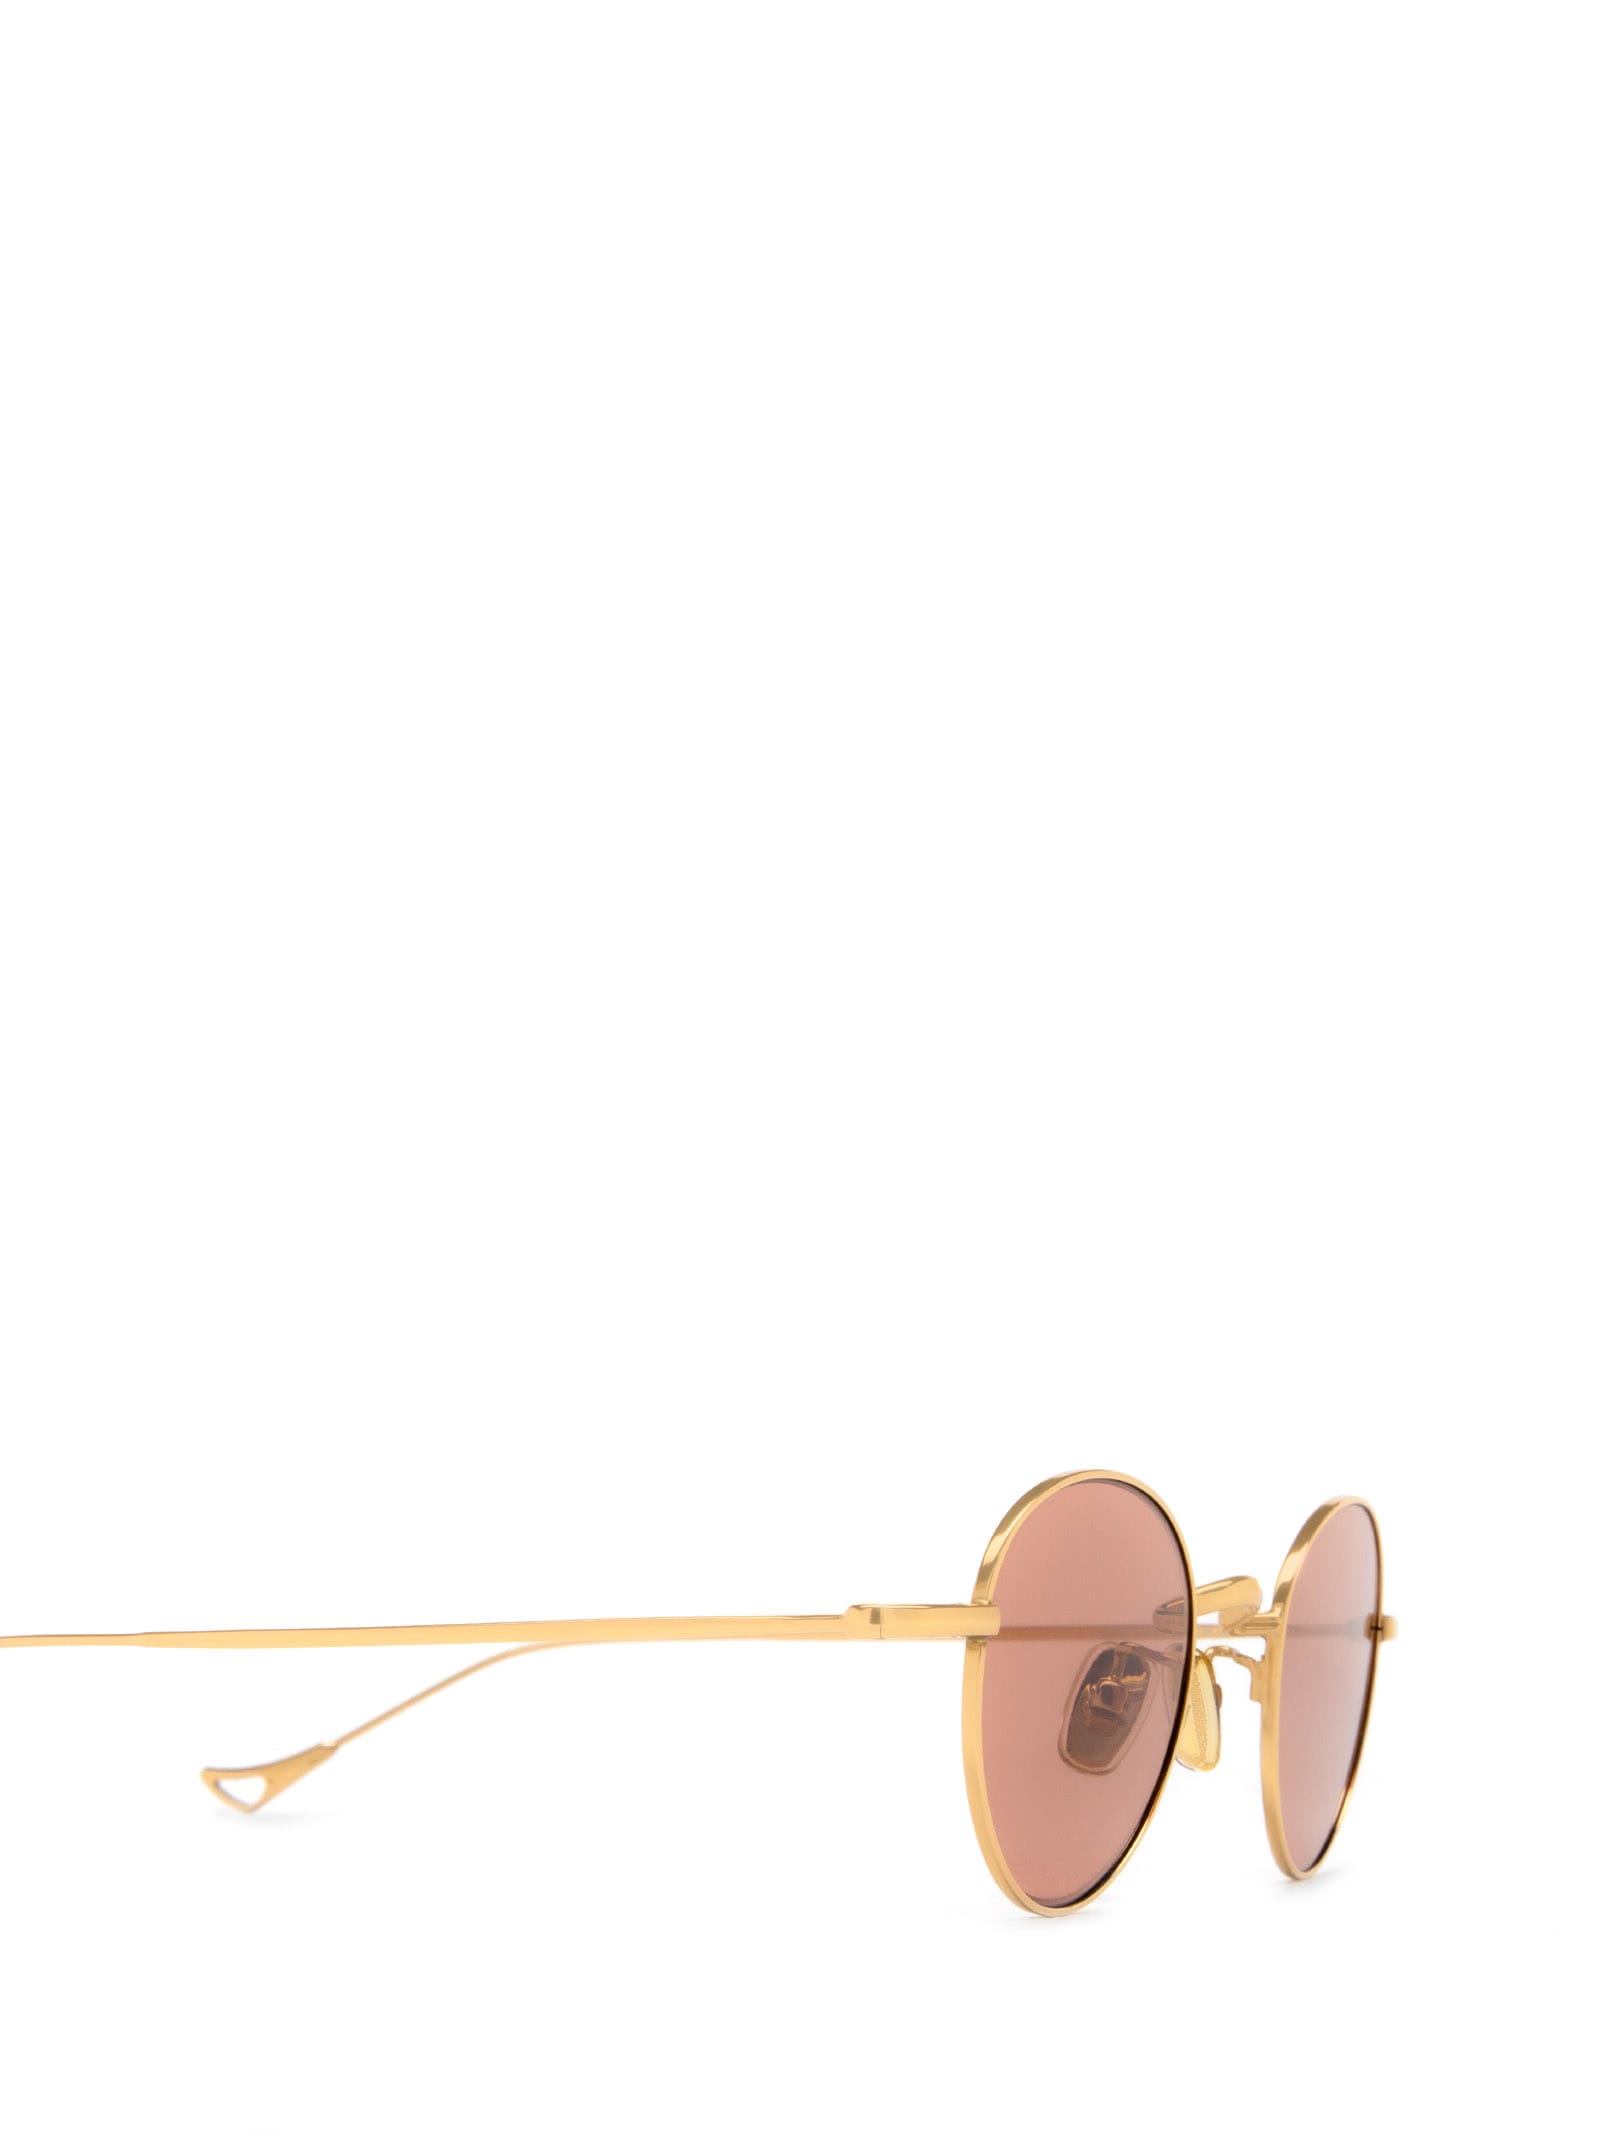 Shop Eyepetizer Clint Gold Sunglasses